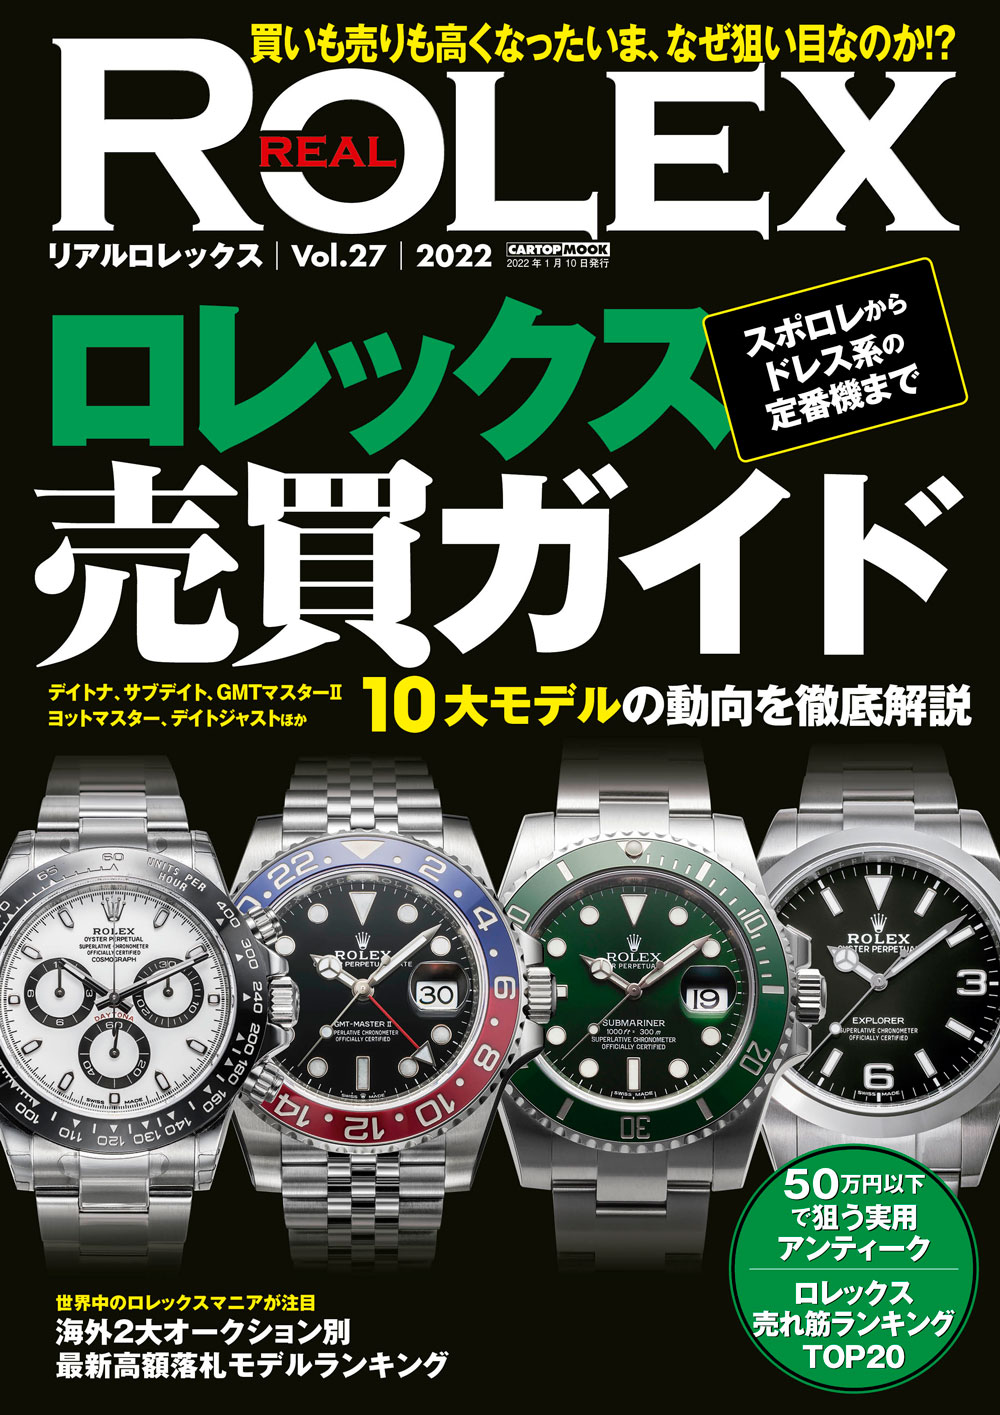 Real Rolex リアルロレックス Vol 27 株式会社交通タイムス社